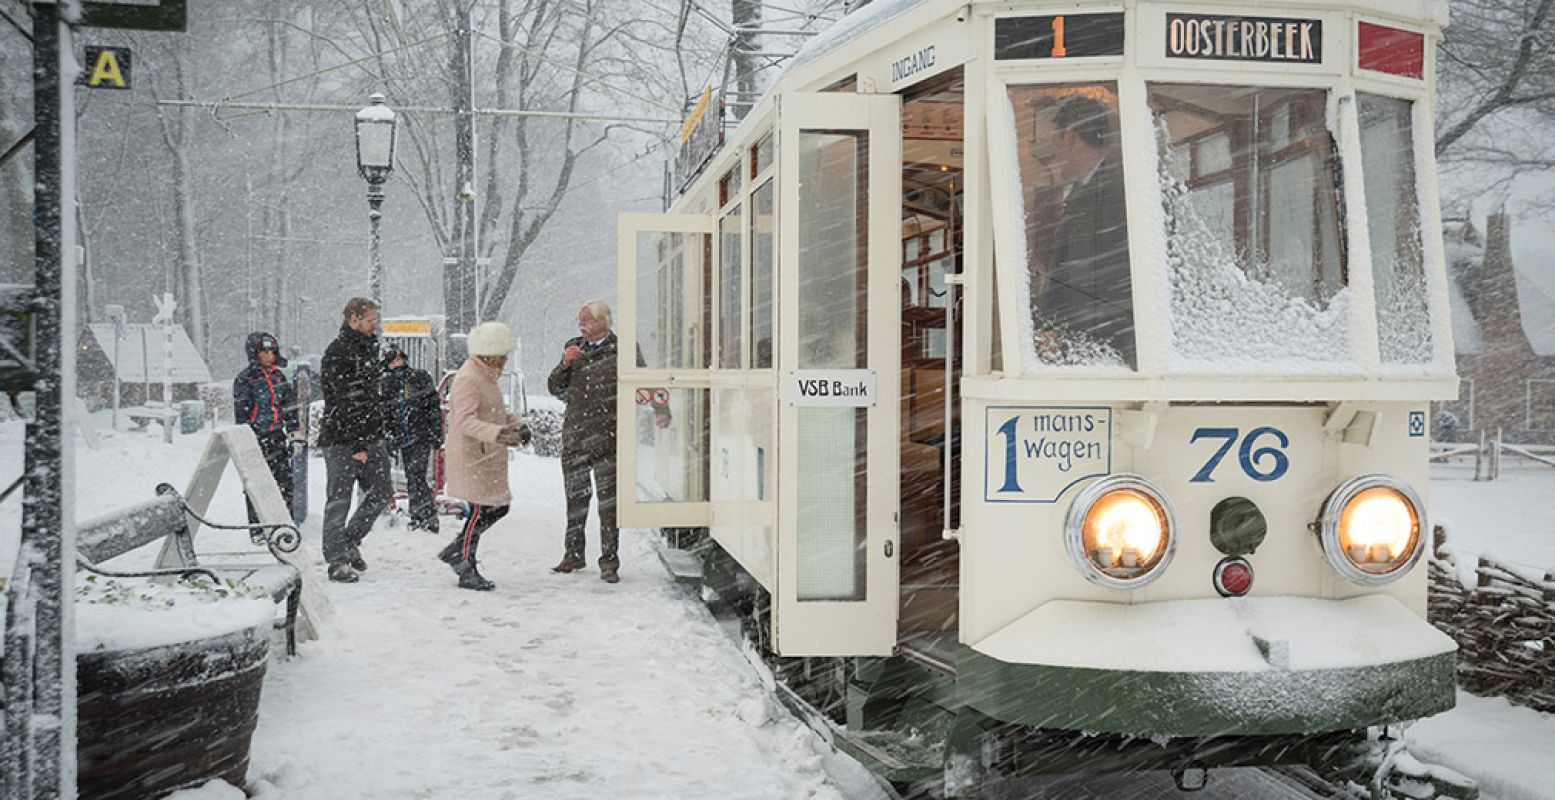 Maak een ritje in de historische tram! Nu alleen nog duimen voor zo'n dik pak sneeuw voor extra wintersfeer. Foto: Nederlands Openluchtmuseum.